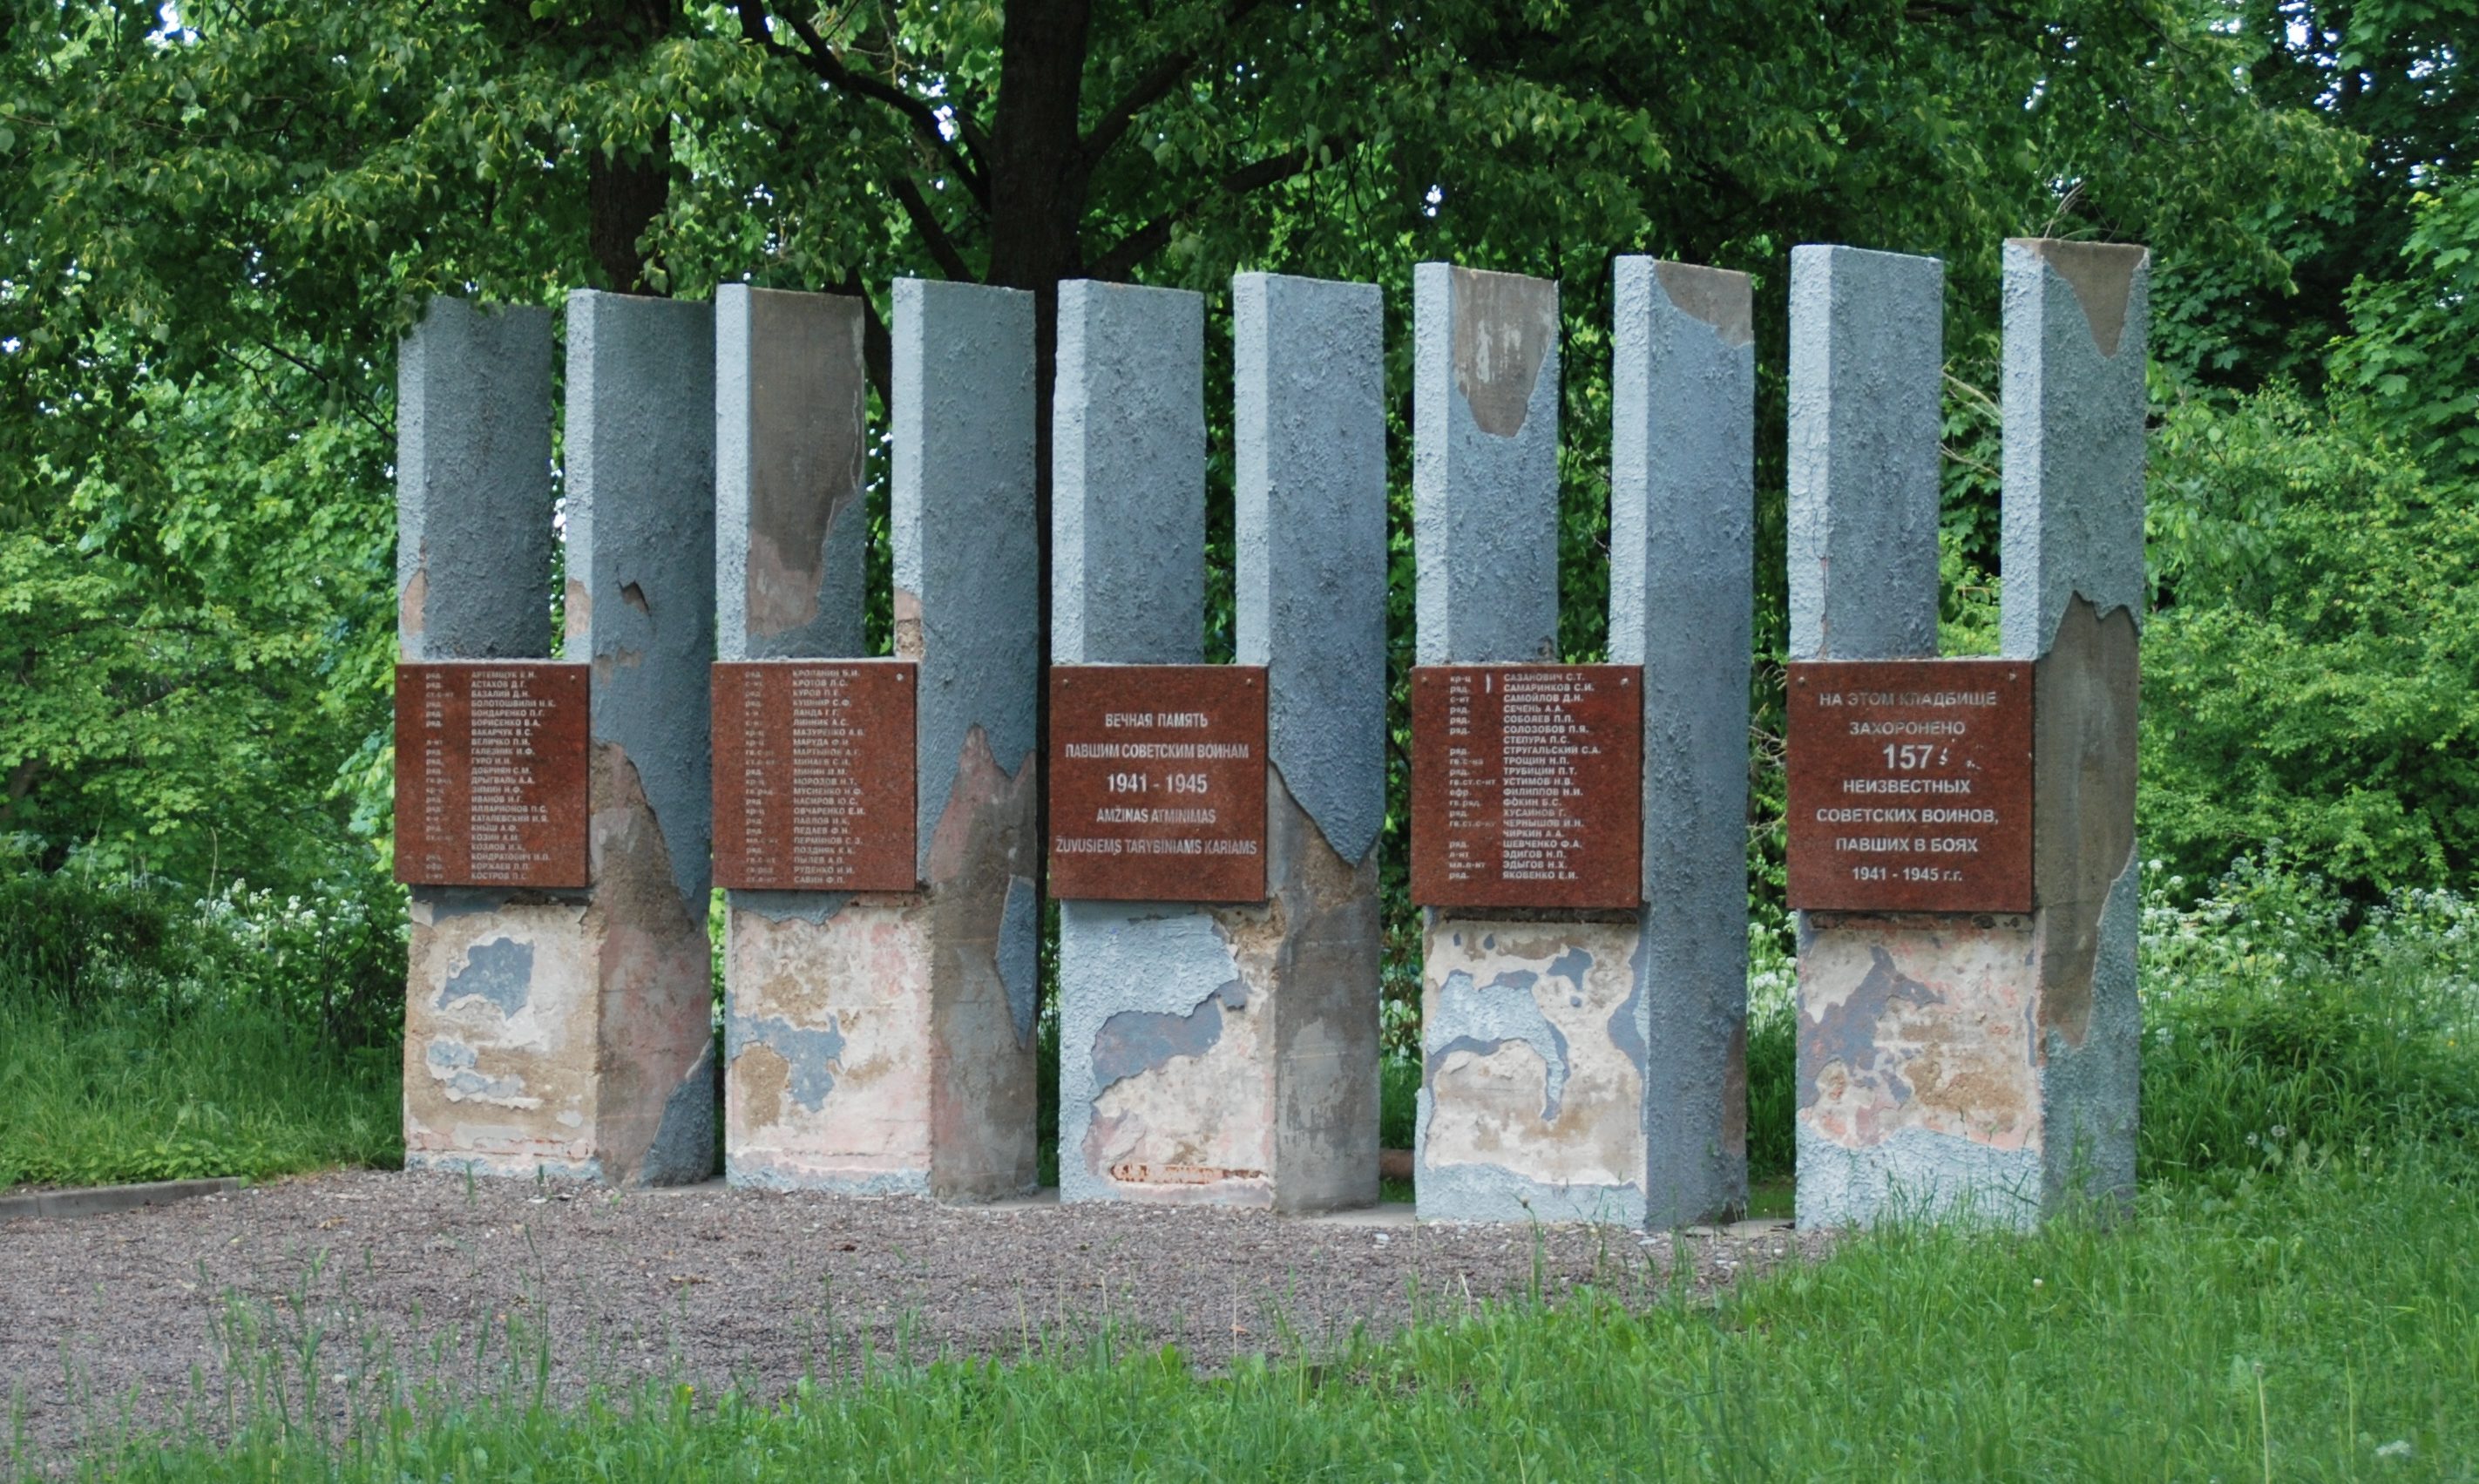 п. Сурвилишкис Кедайняйского р-на. Памятник по улице Кедайнюд, установленный на братской могиле, в которой похоронено 220 воинов, в т.ч. 157 неизвестных, погибших летом 1944 года у сёл Калнабярже и Казокай. 